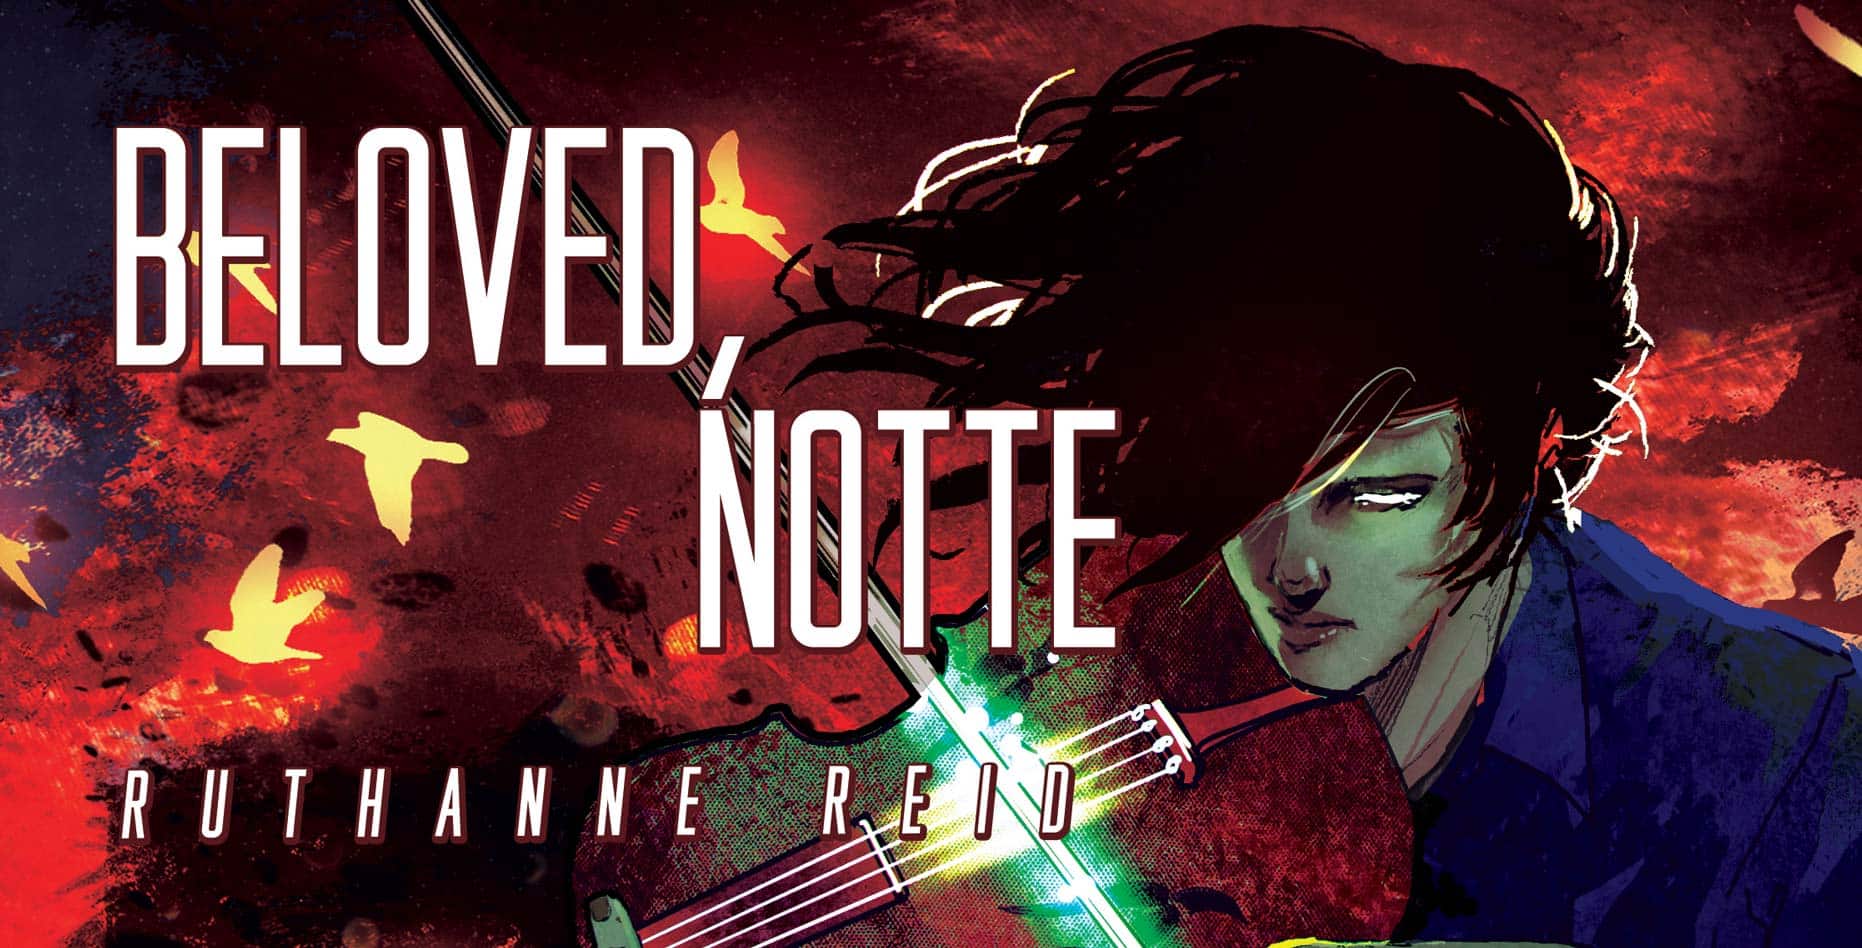 Beloved, Notte - a novel by Ruthanne Reid